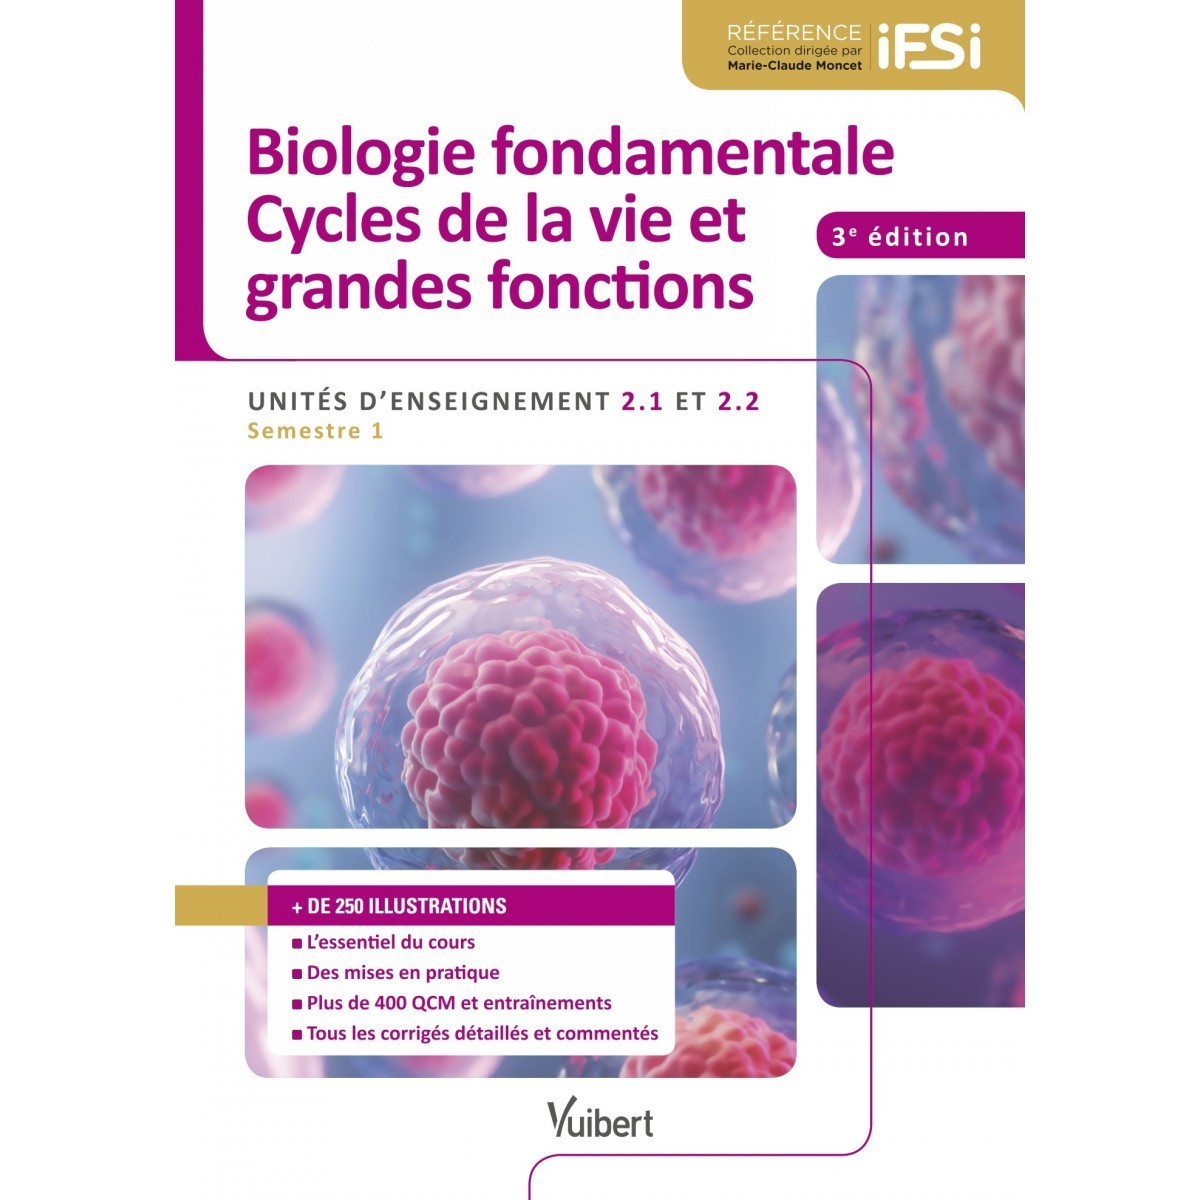 Biologie fondamentale, cycles de la vie & grandes fonctions UE 2.1